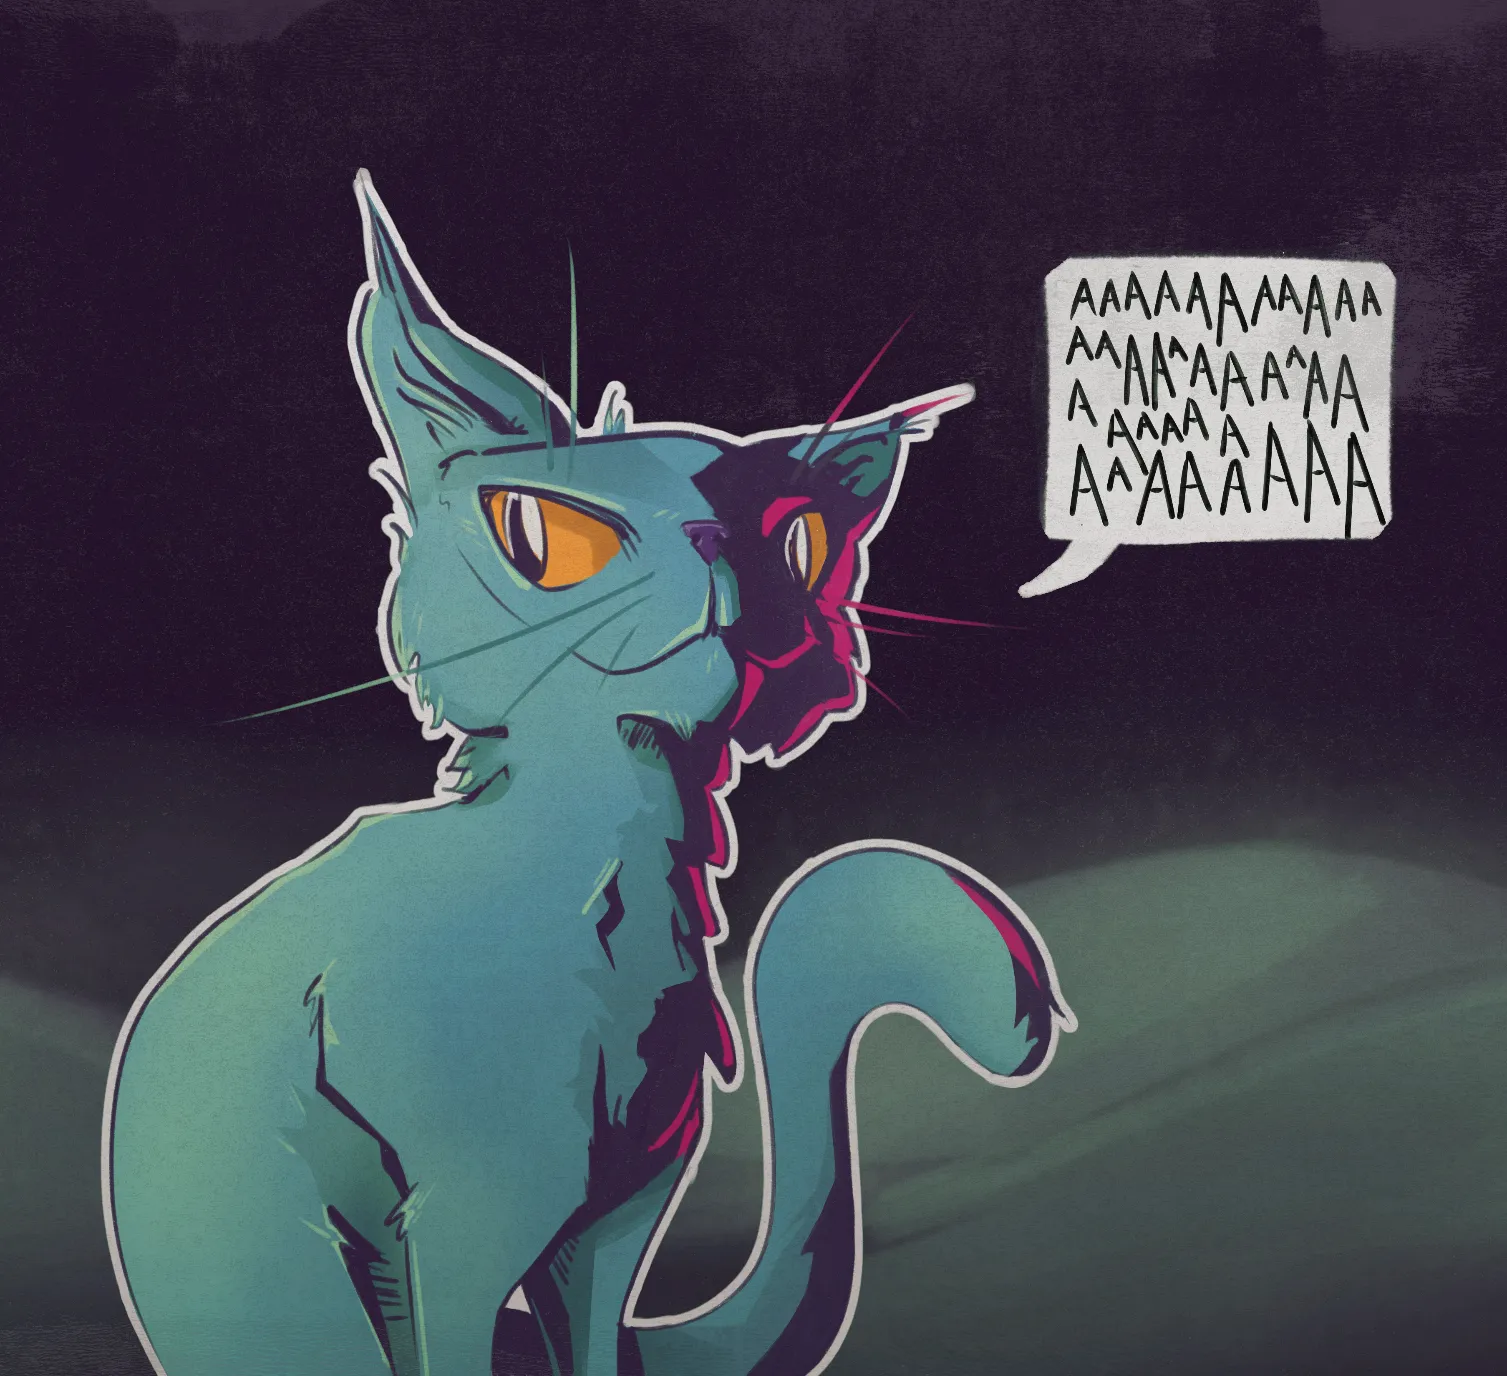 An illustration of a blue cat going 'AAaaa'